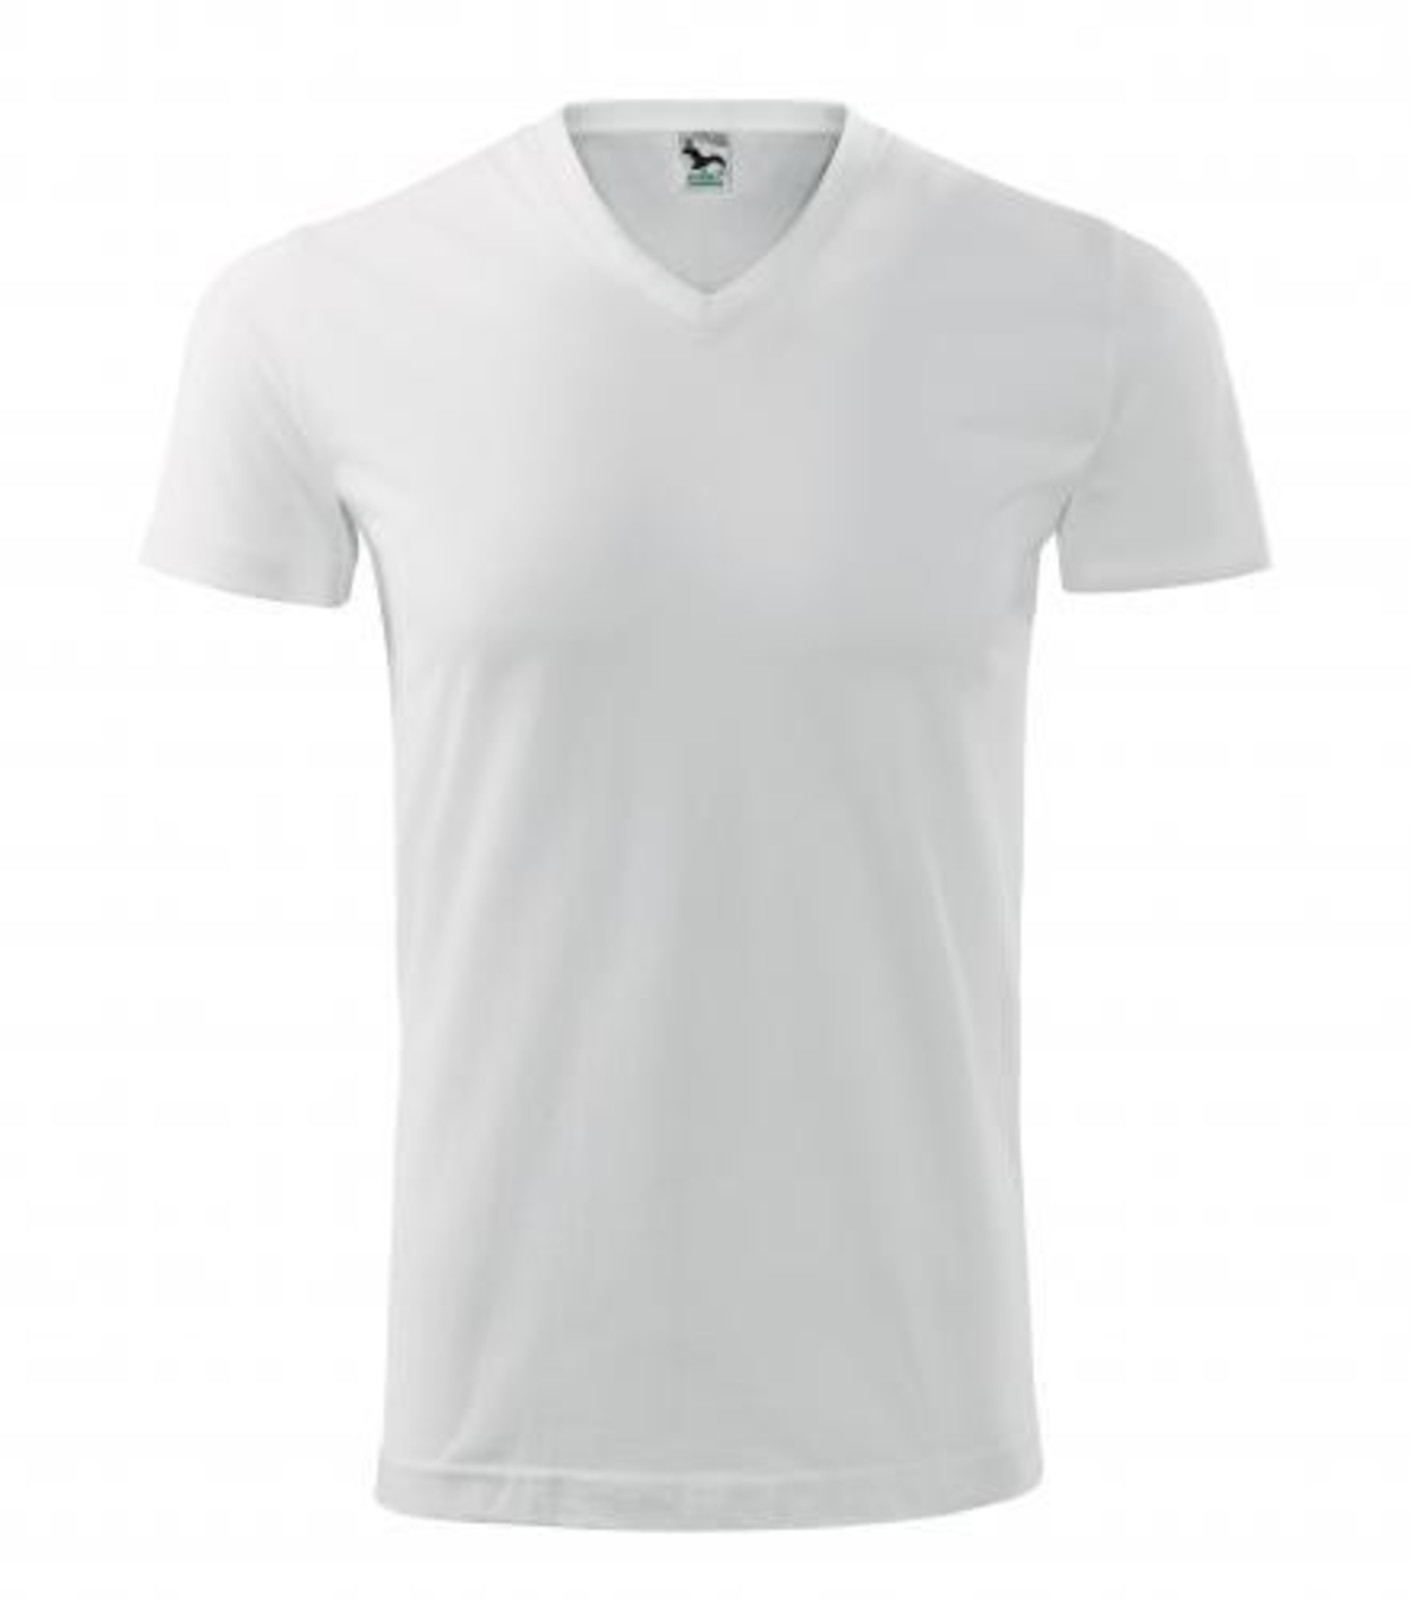 Unisex tričko s V výstrihom Adler Heavy V-Neck 111 - veľkosť: S, farba: biela